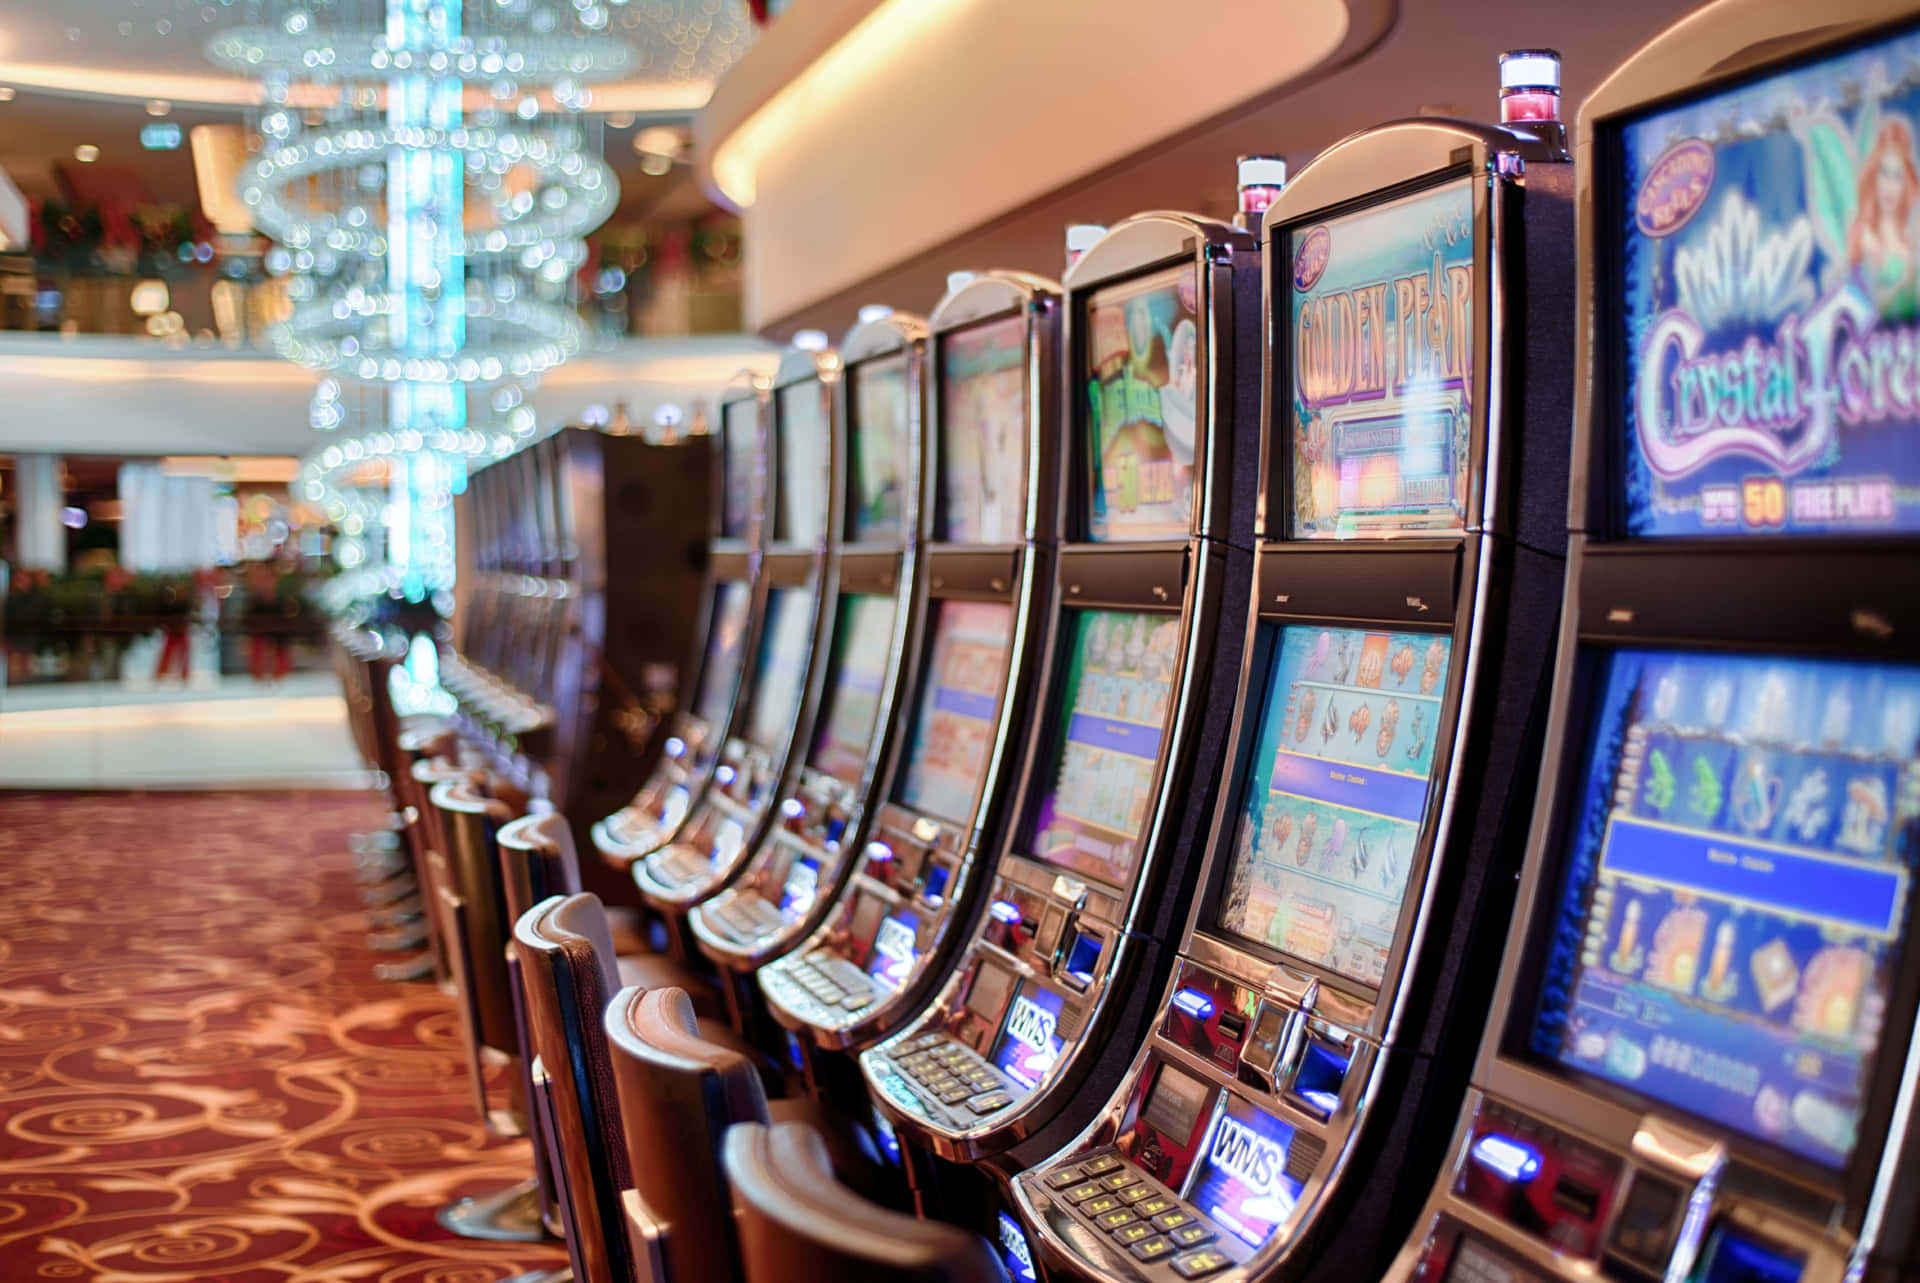 Enrad Spelautomater På Ett Kasino